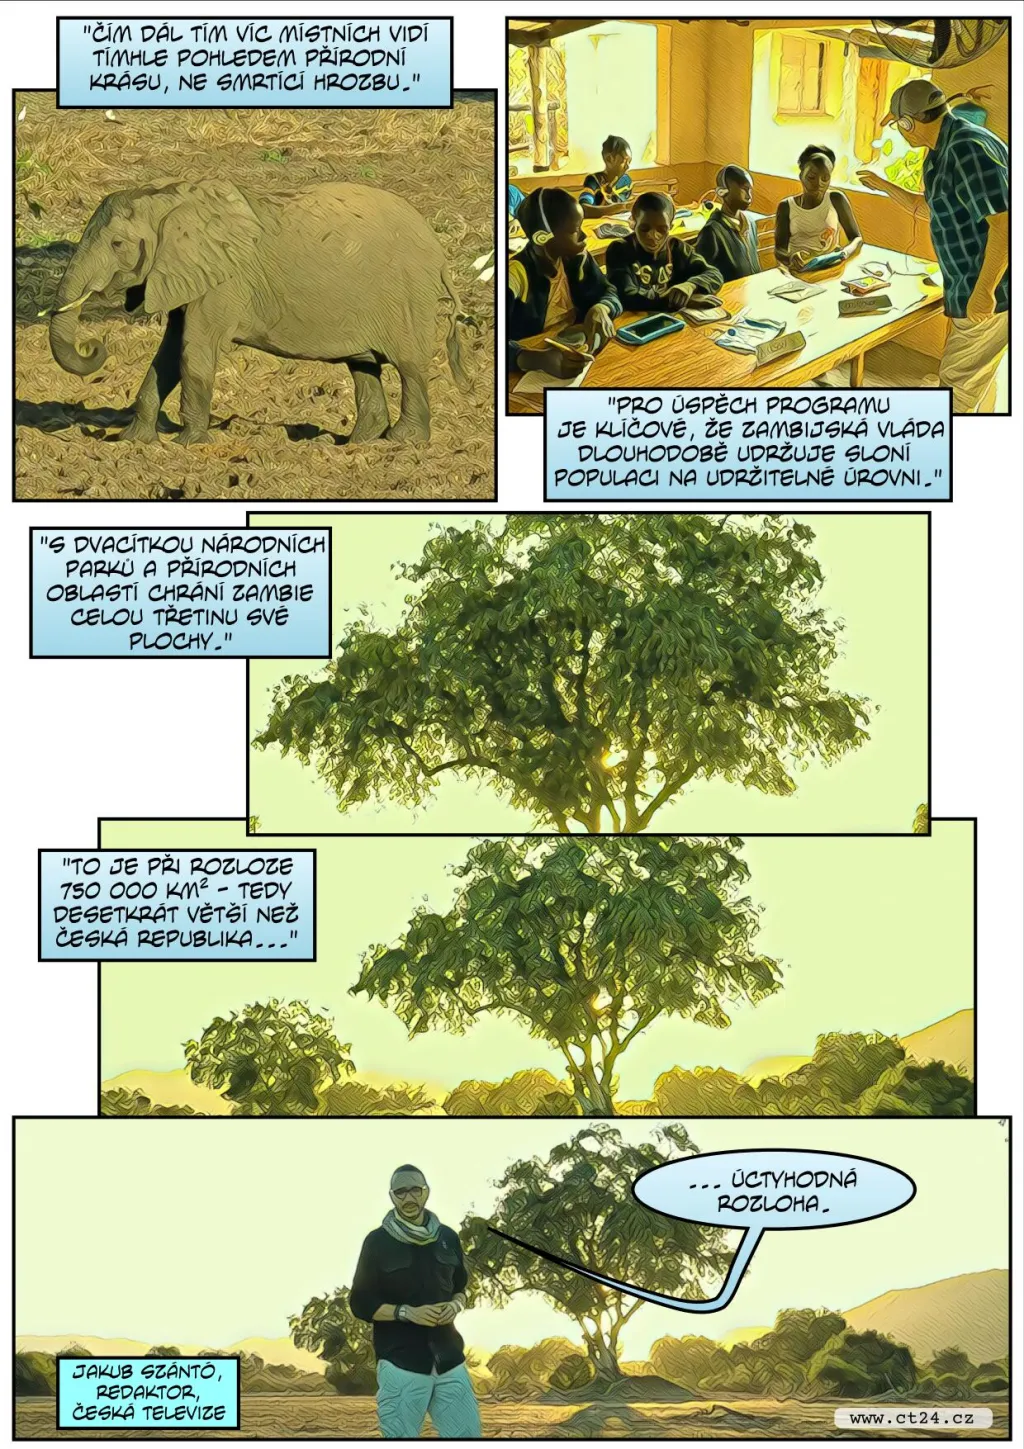 Komiks: Příliš velká populace slonů v Botswaně